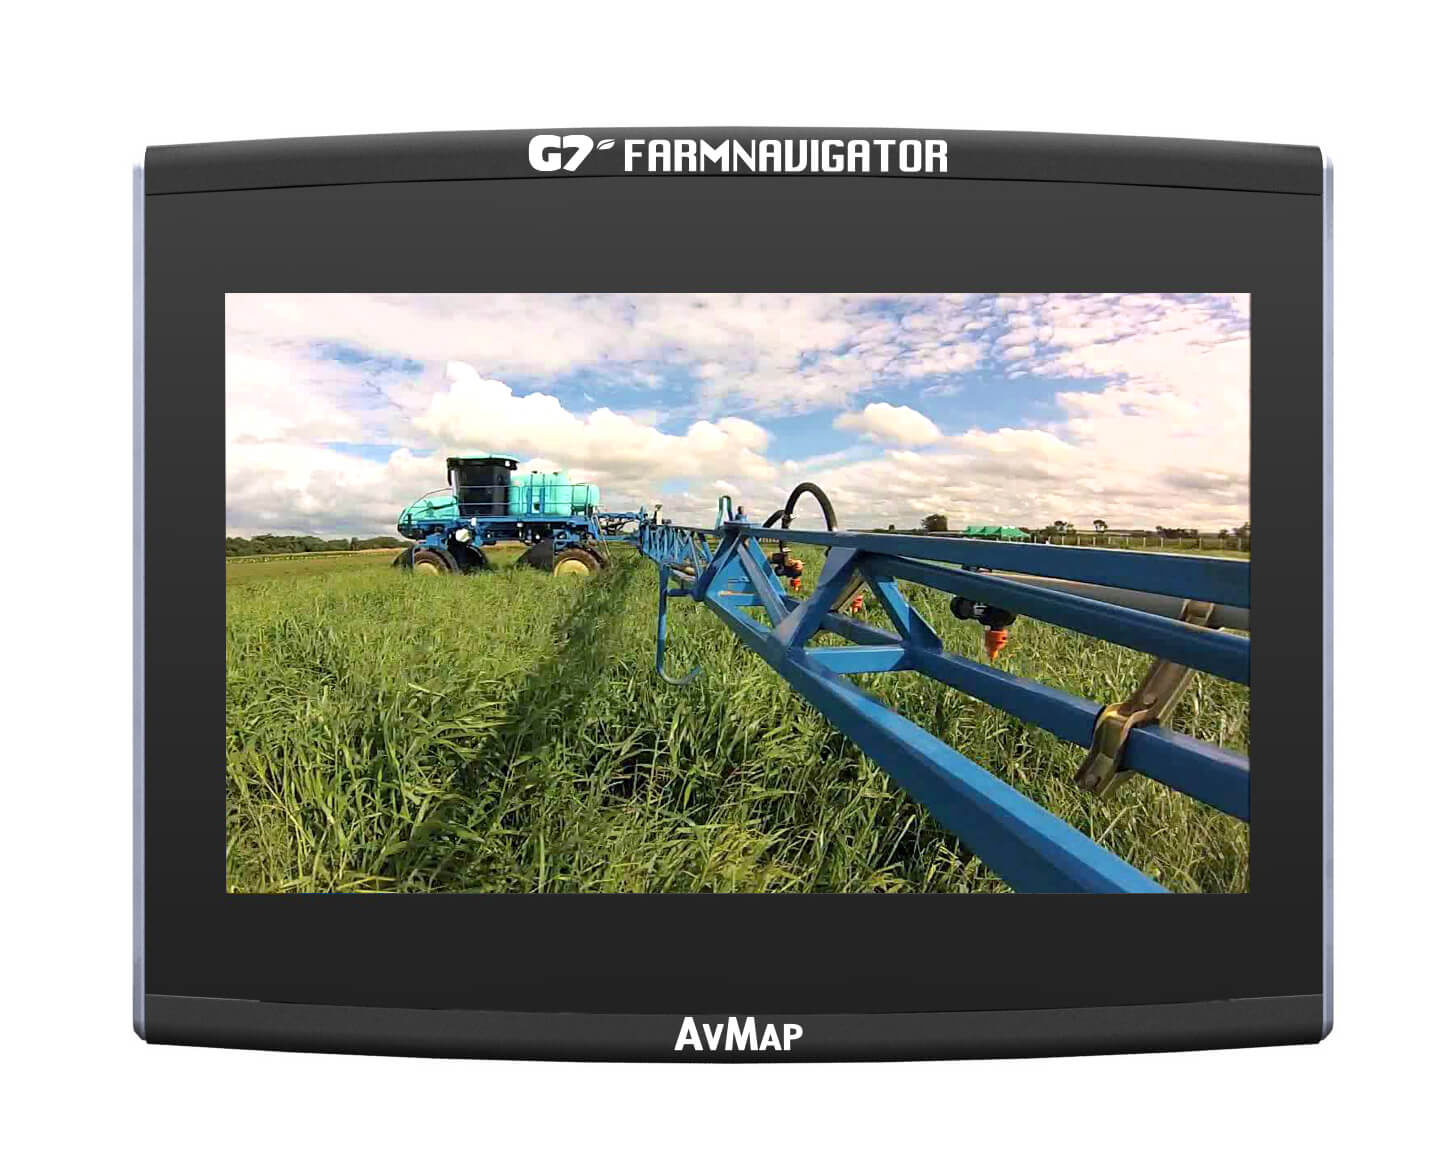 AvMap_Farmnavigator_G7_Videokamera_Verbindung